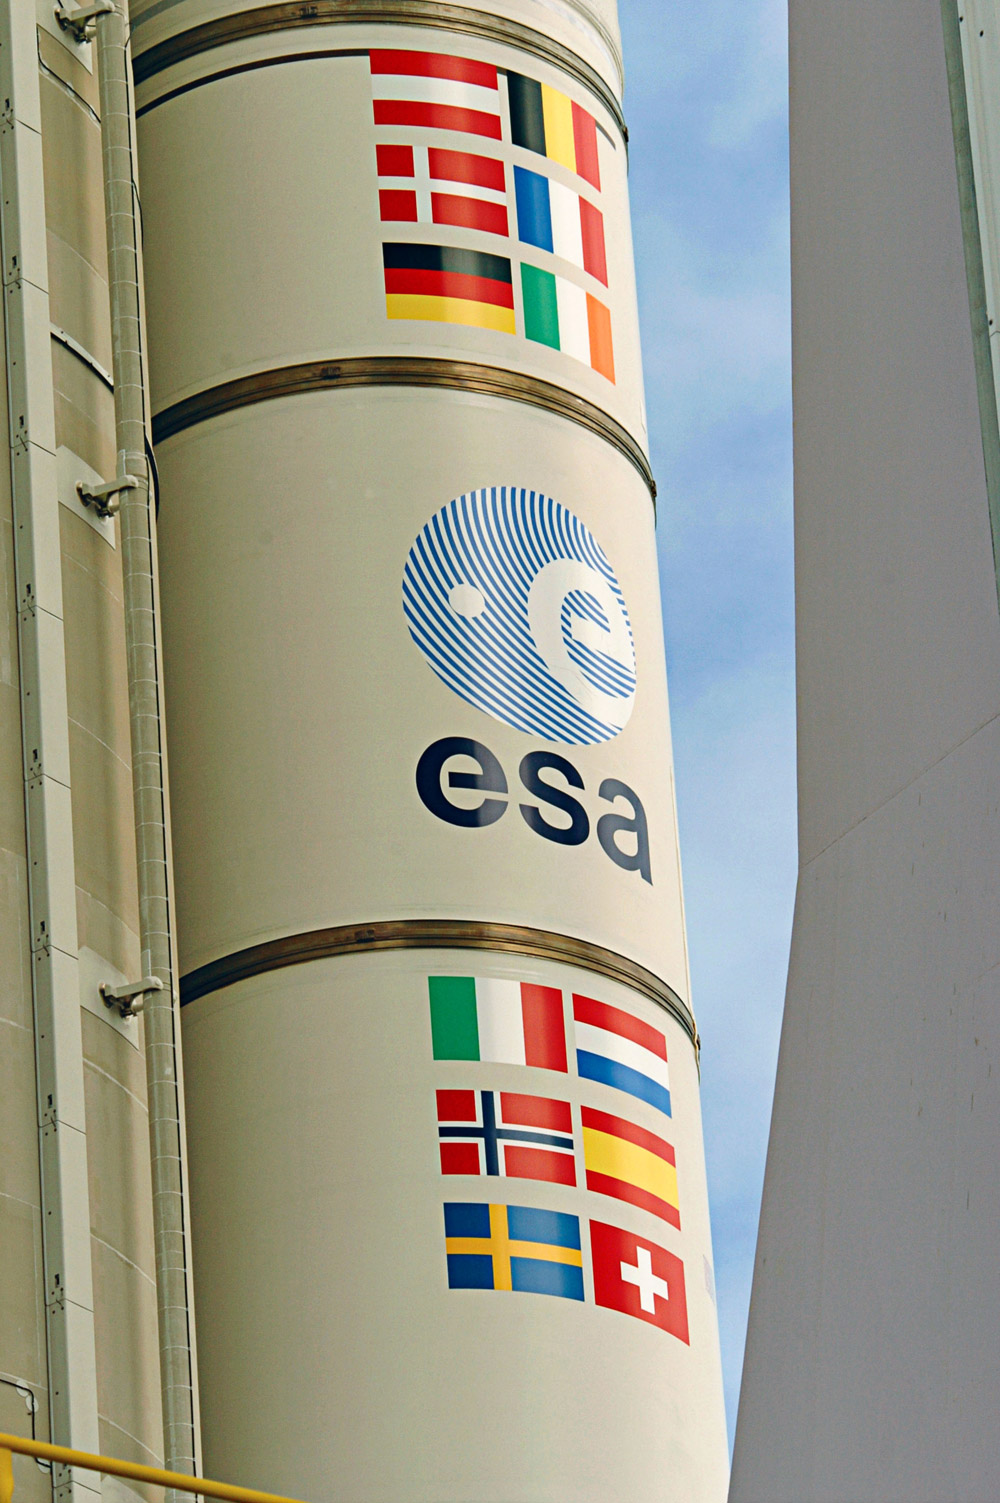 L’Agence spatiale européenne n’a pas encore officiellement décidé d’engager le développement complet d’Ariane 5 ME, mais après la Revue de définition préliminaire, tous les clignotants techniques sont au vert. © Esa/S. Corvaja